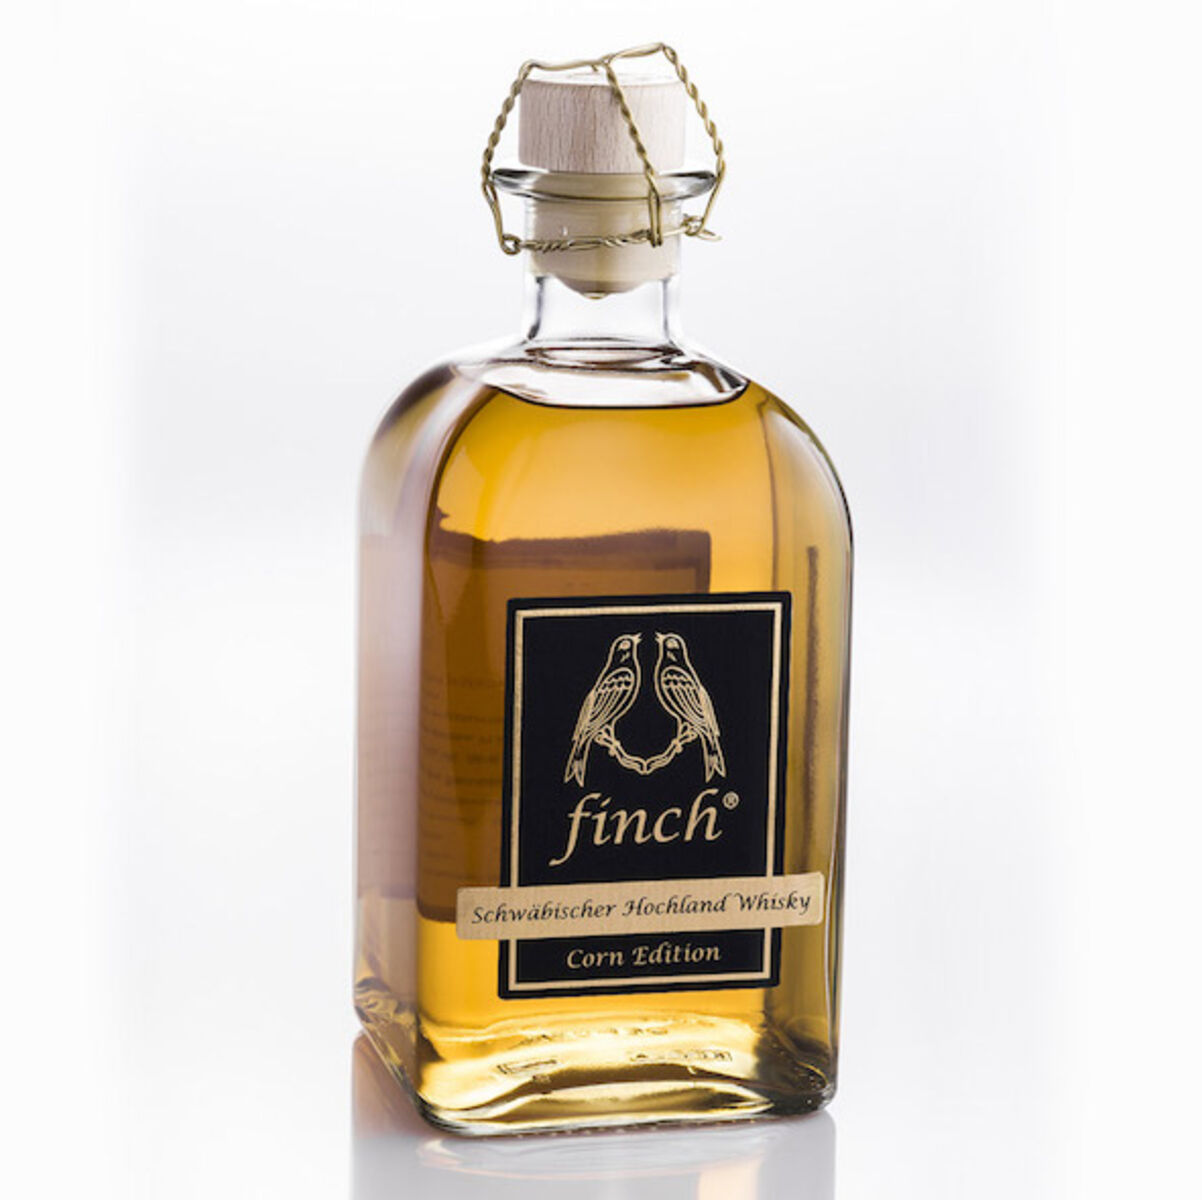 finch – Schwäbischer Hochland Whisky